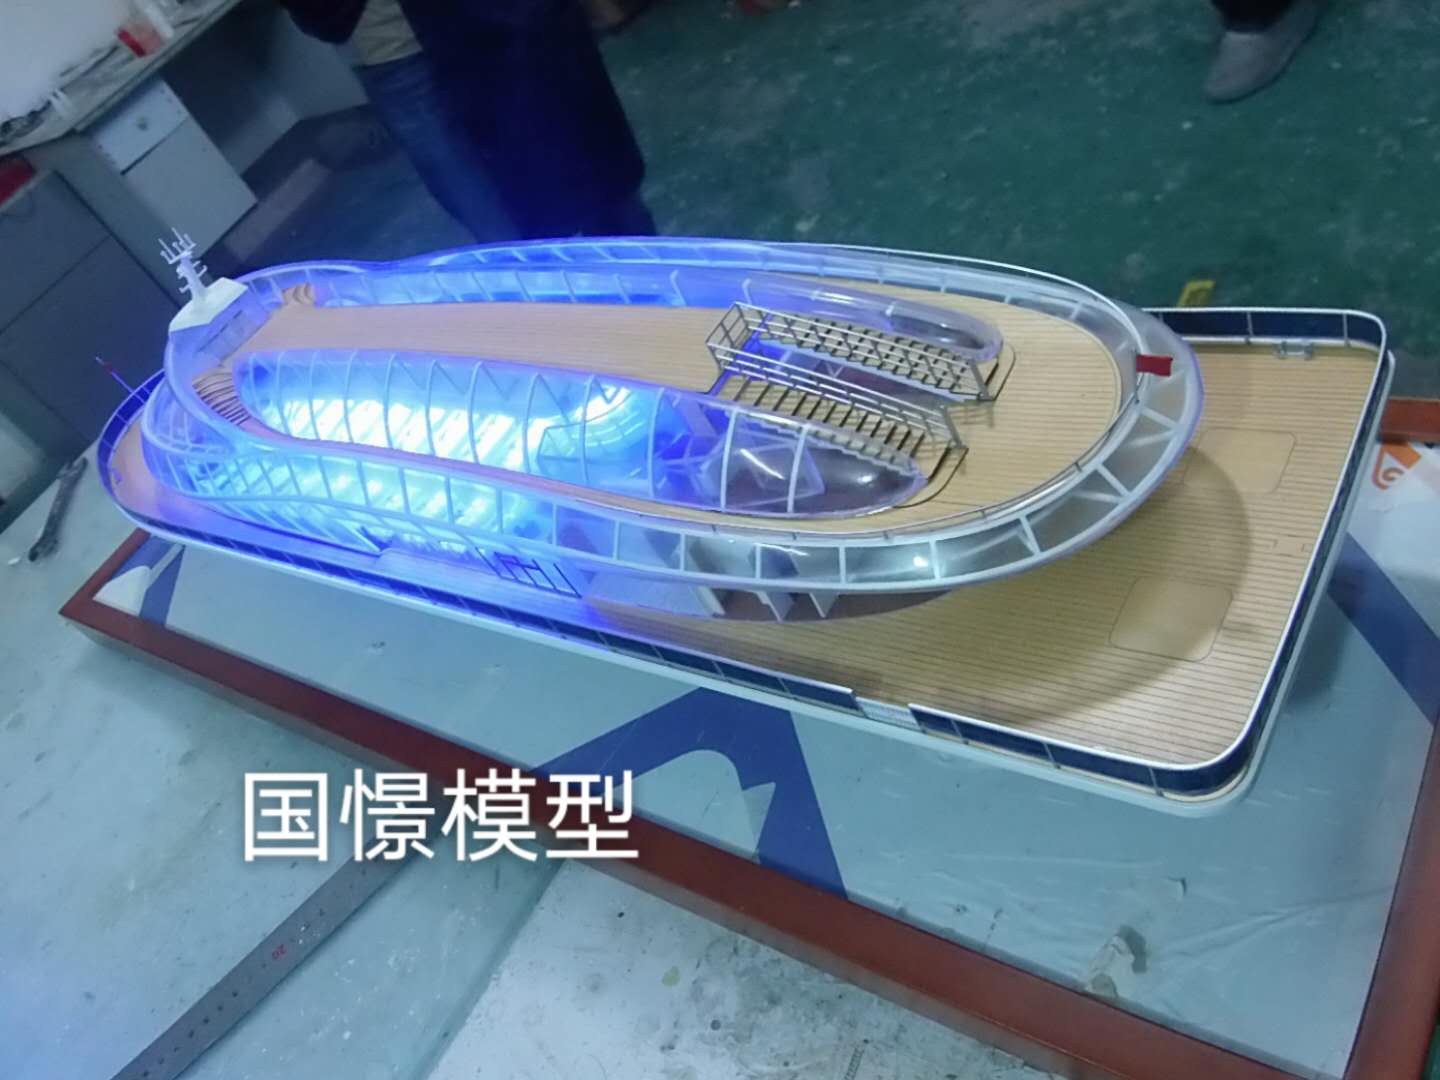 孟村船舶模型